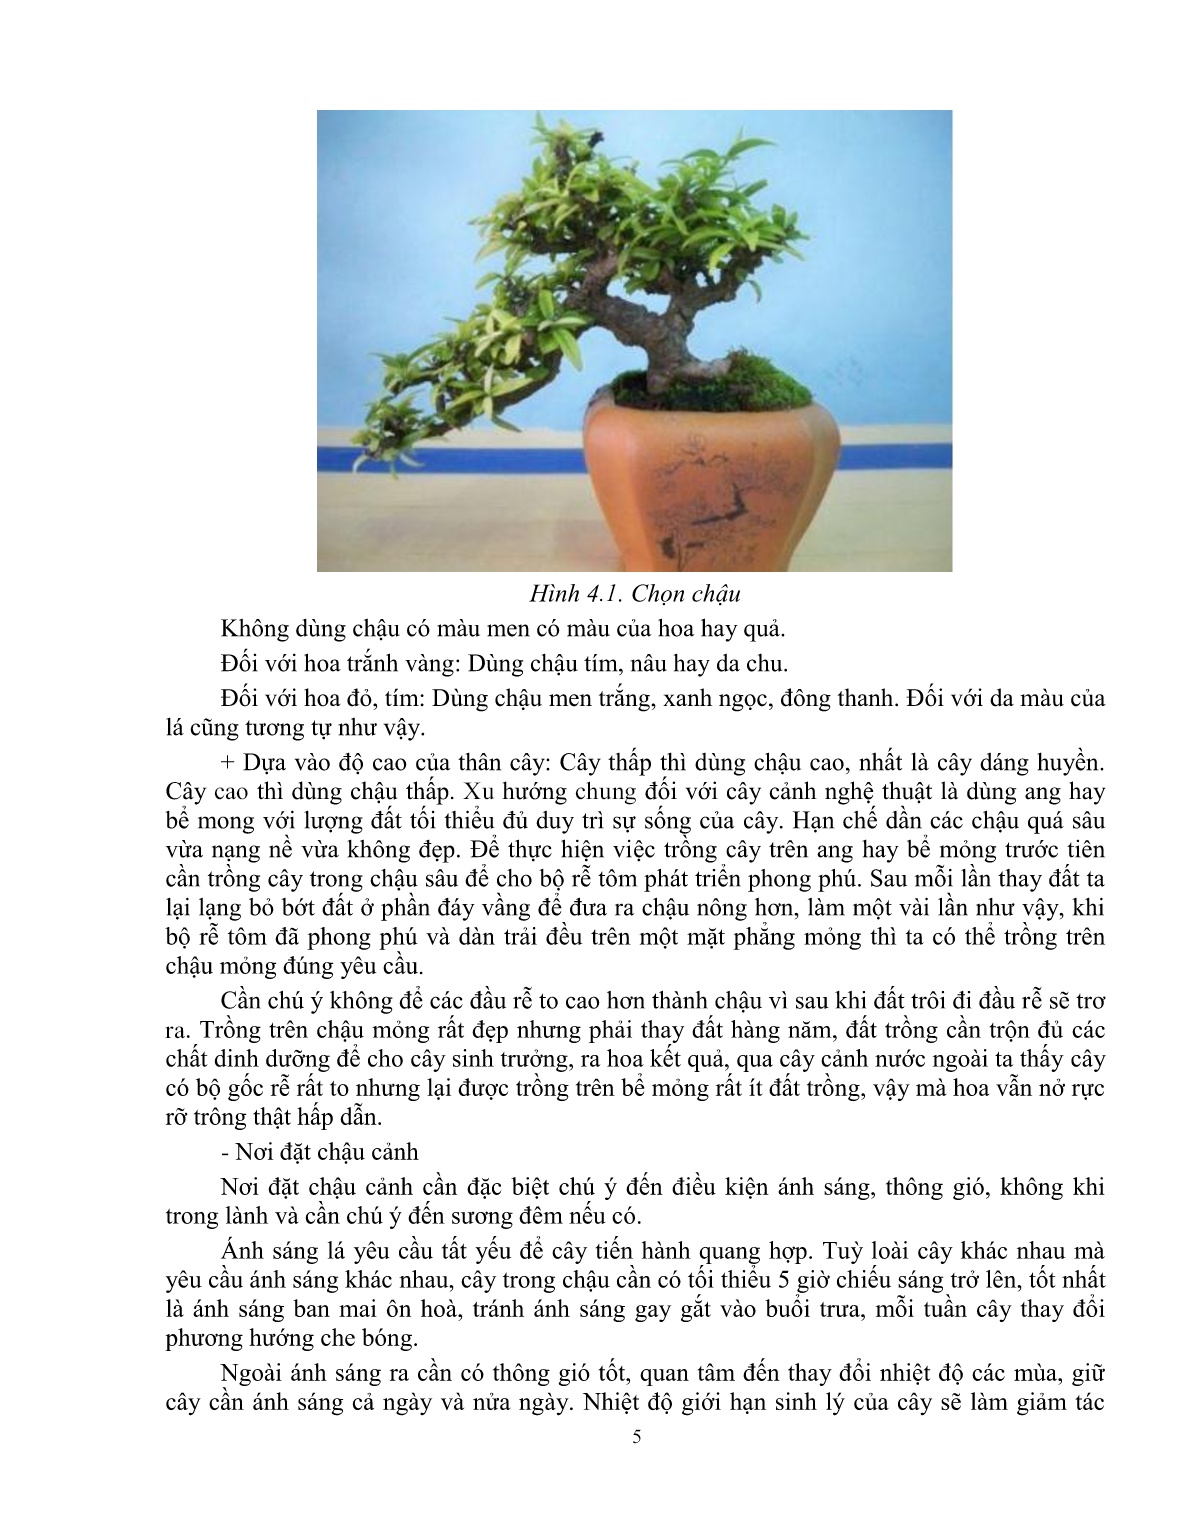 Giáo trình mô đun Chăm sóc cây cảnh (Trình độ: Đào tạo nghề dưới 3 tháng) trang 6